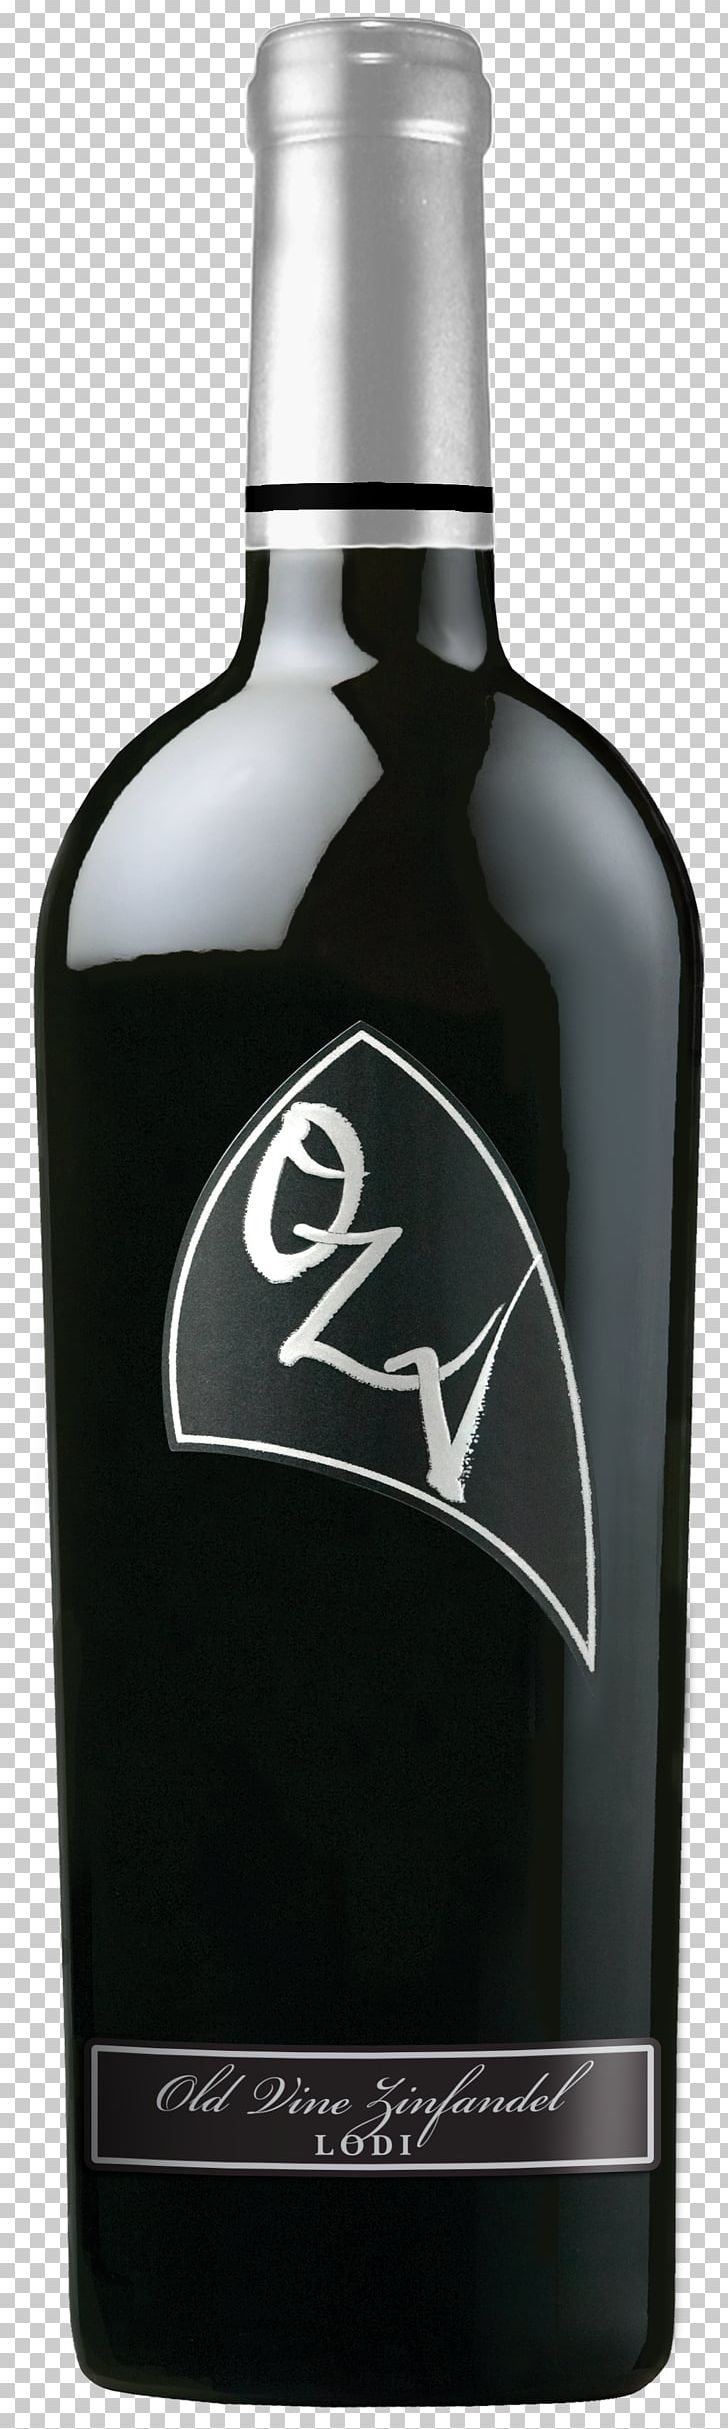 Zinfandel Lodi Oak Ridge Winery Distilled Beverage PNG, Clipart, Alcoholic Beverage, Bottle, Distilled Beverage, Drink, Flavor Free PNG Download